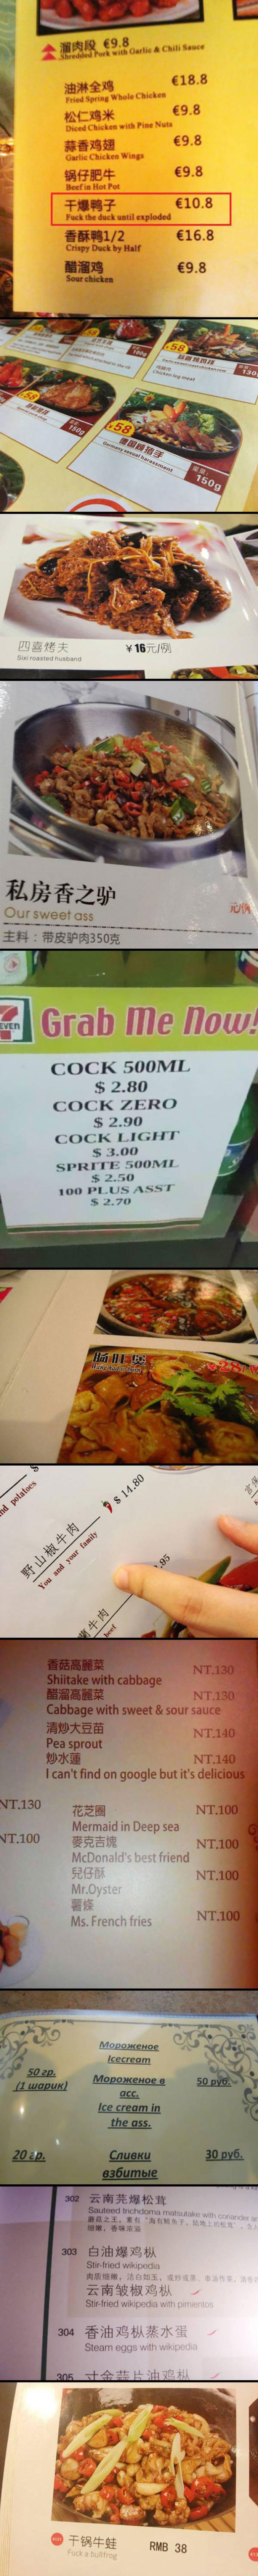 Des traductions de plats asiatiques qui mettent en appétit.